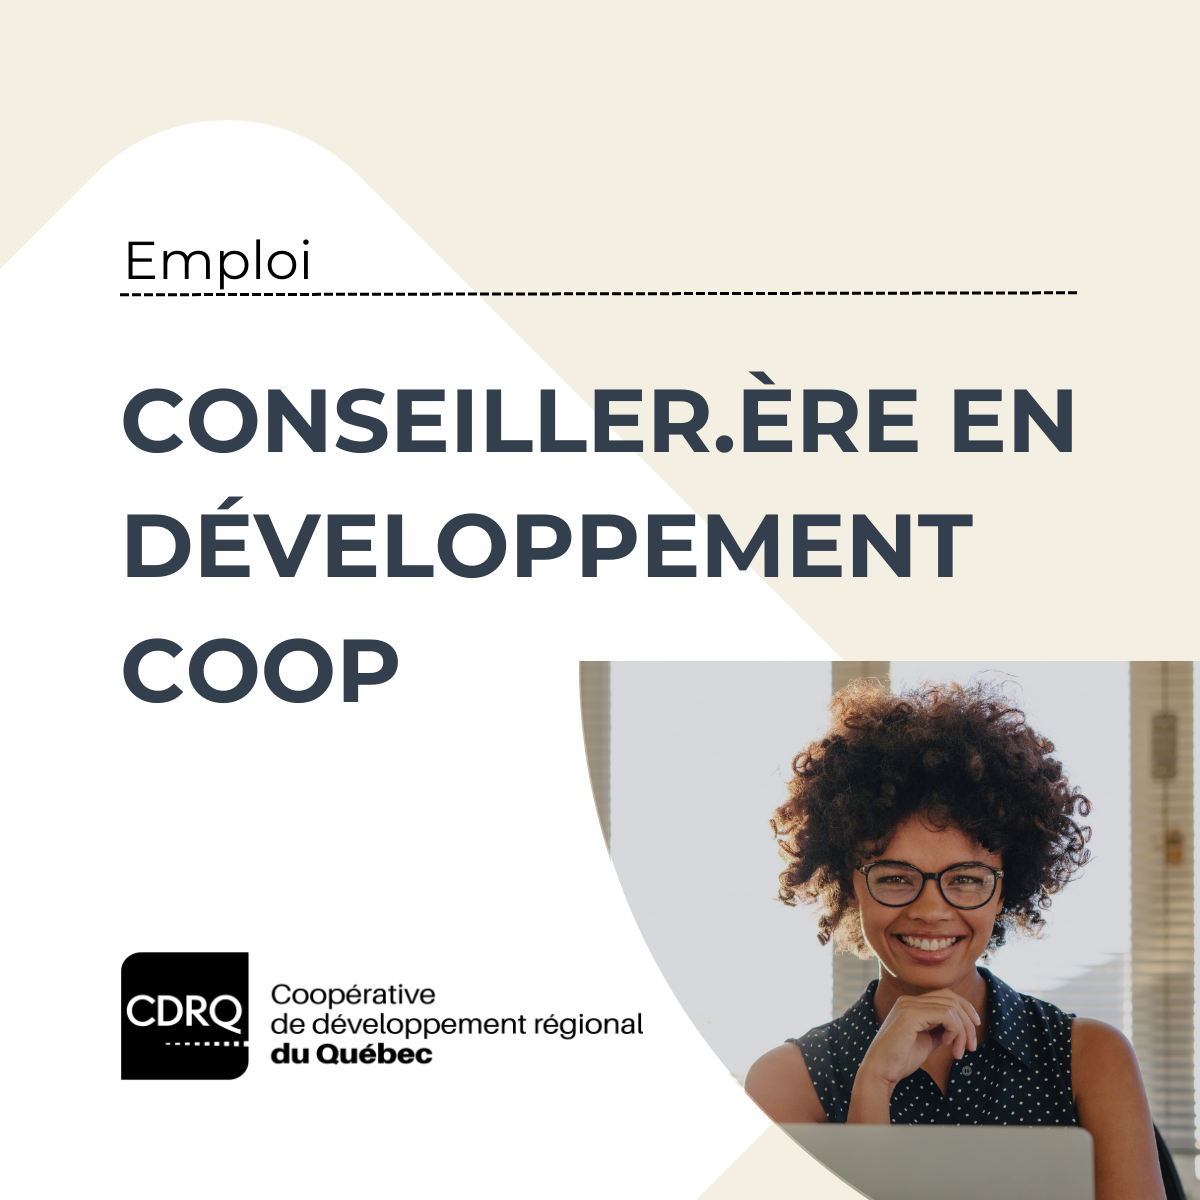 Emploi - Conseiller en développement coopératif - CDRQ